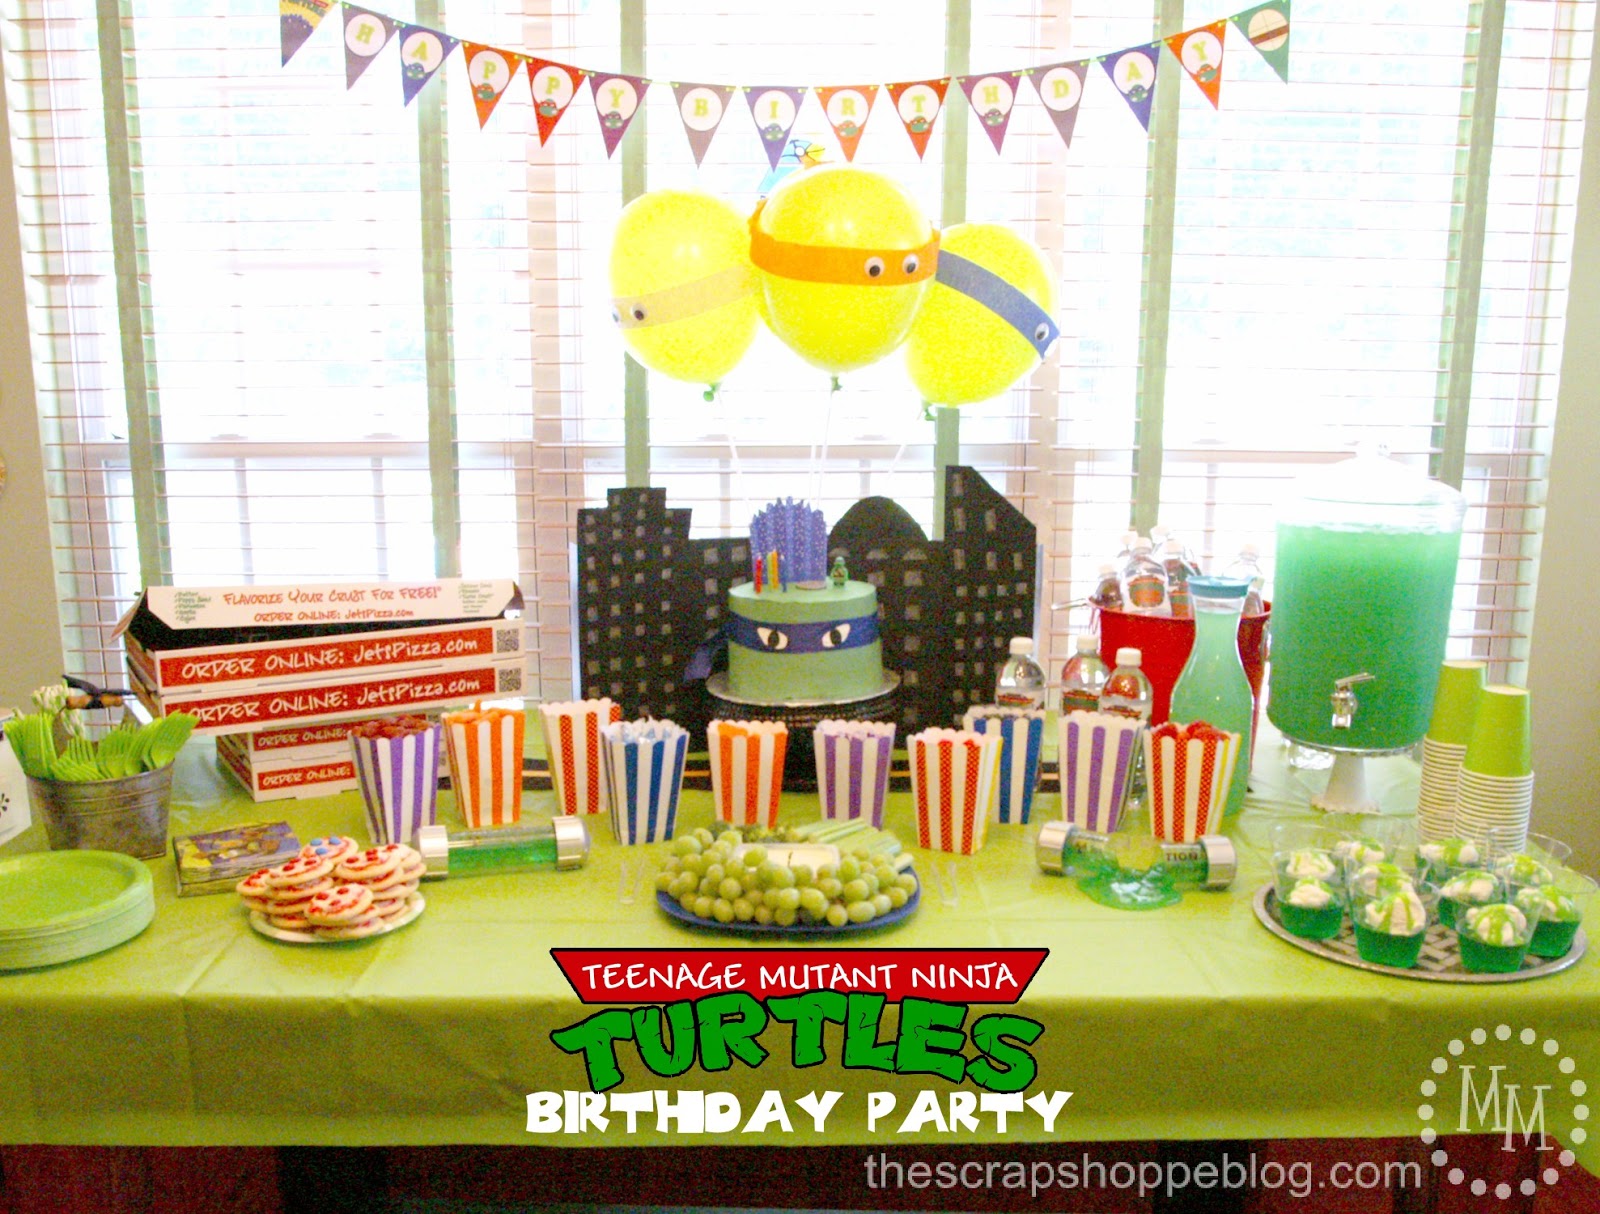 http://1.bp.blogspot.com/-SJ3IHeKtvFQ/Ui_hS_piE-I/AAAAAAAARA8/KFP5DCyd9KA/s1600/teenage-mutant-ninja-turtle-party-table.JPG